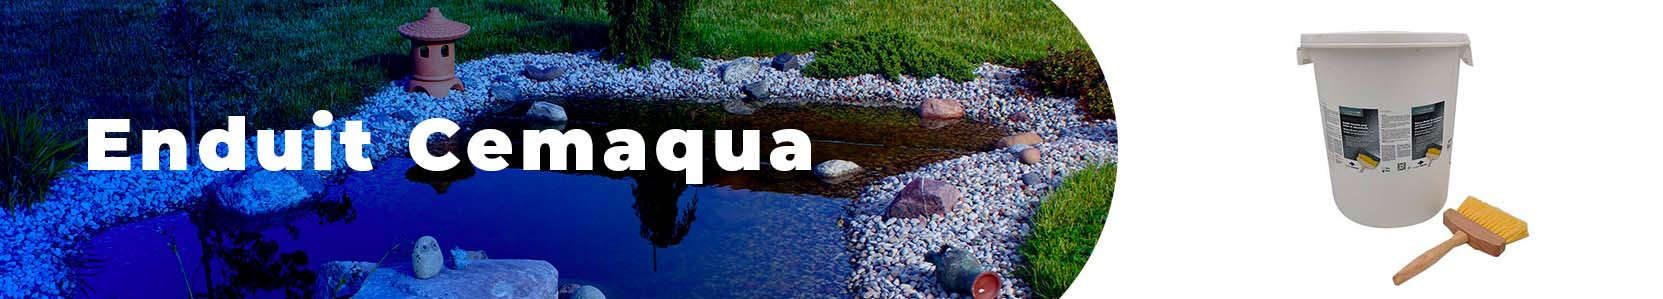 Enduit étanche Cemaqua | Enduit pour bassins aquatiques et fontaines